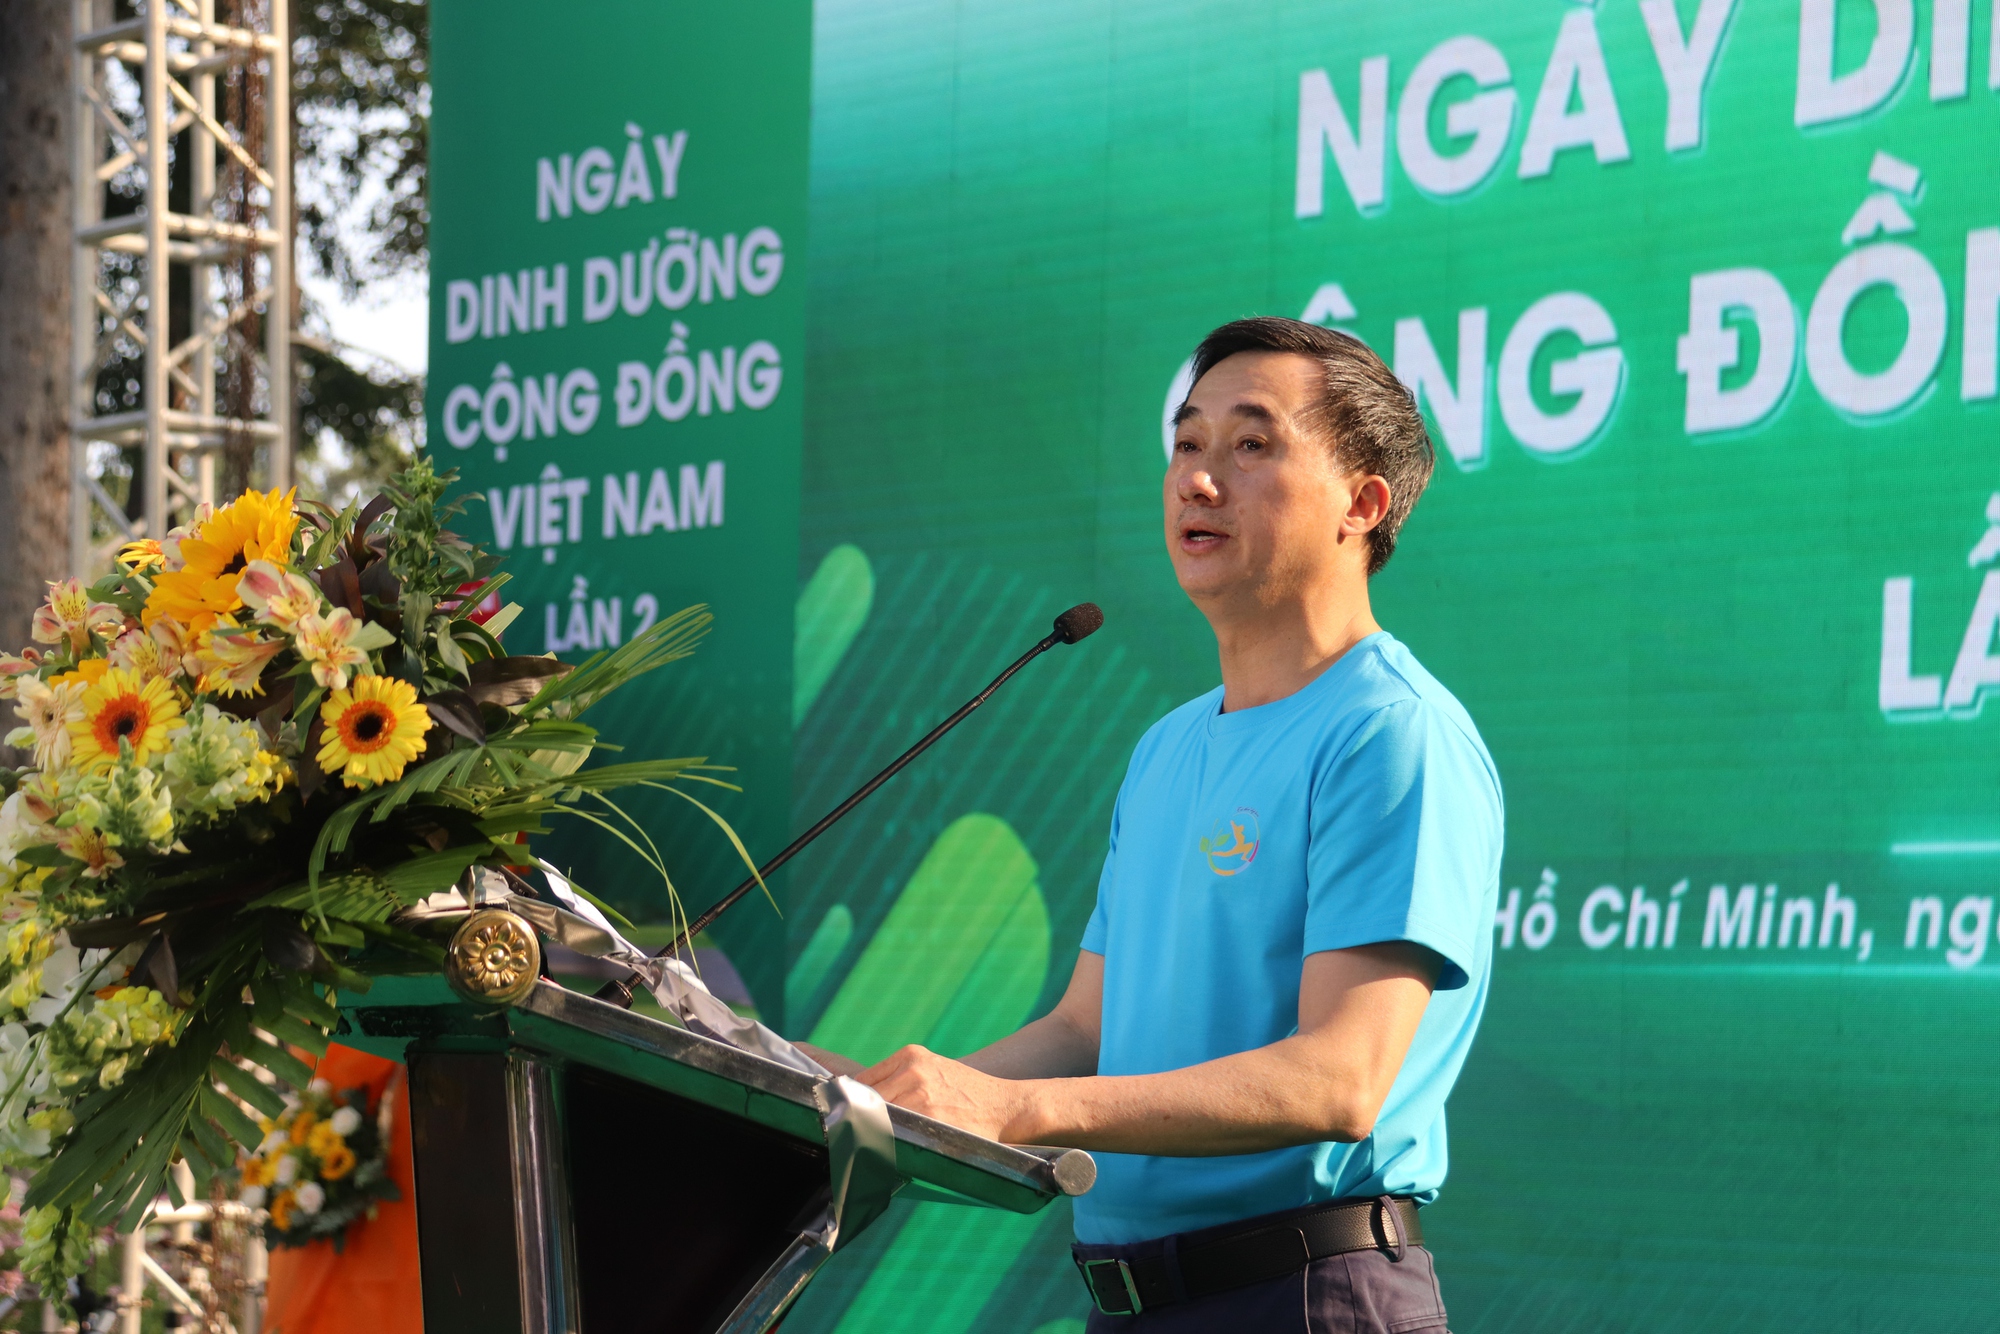 Ngày Dinh dưỡng cộng đồng Việt Nam lần 2 cổ vũ toàn dân thực hành lối sống năng động, khoa học- Ảnh 2.